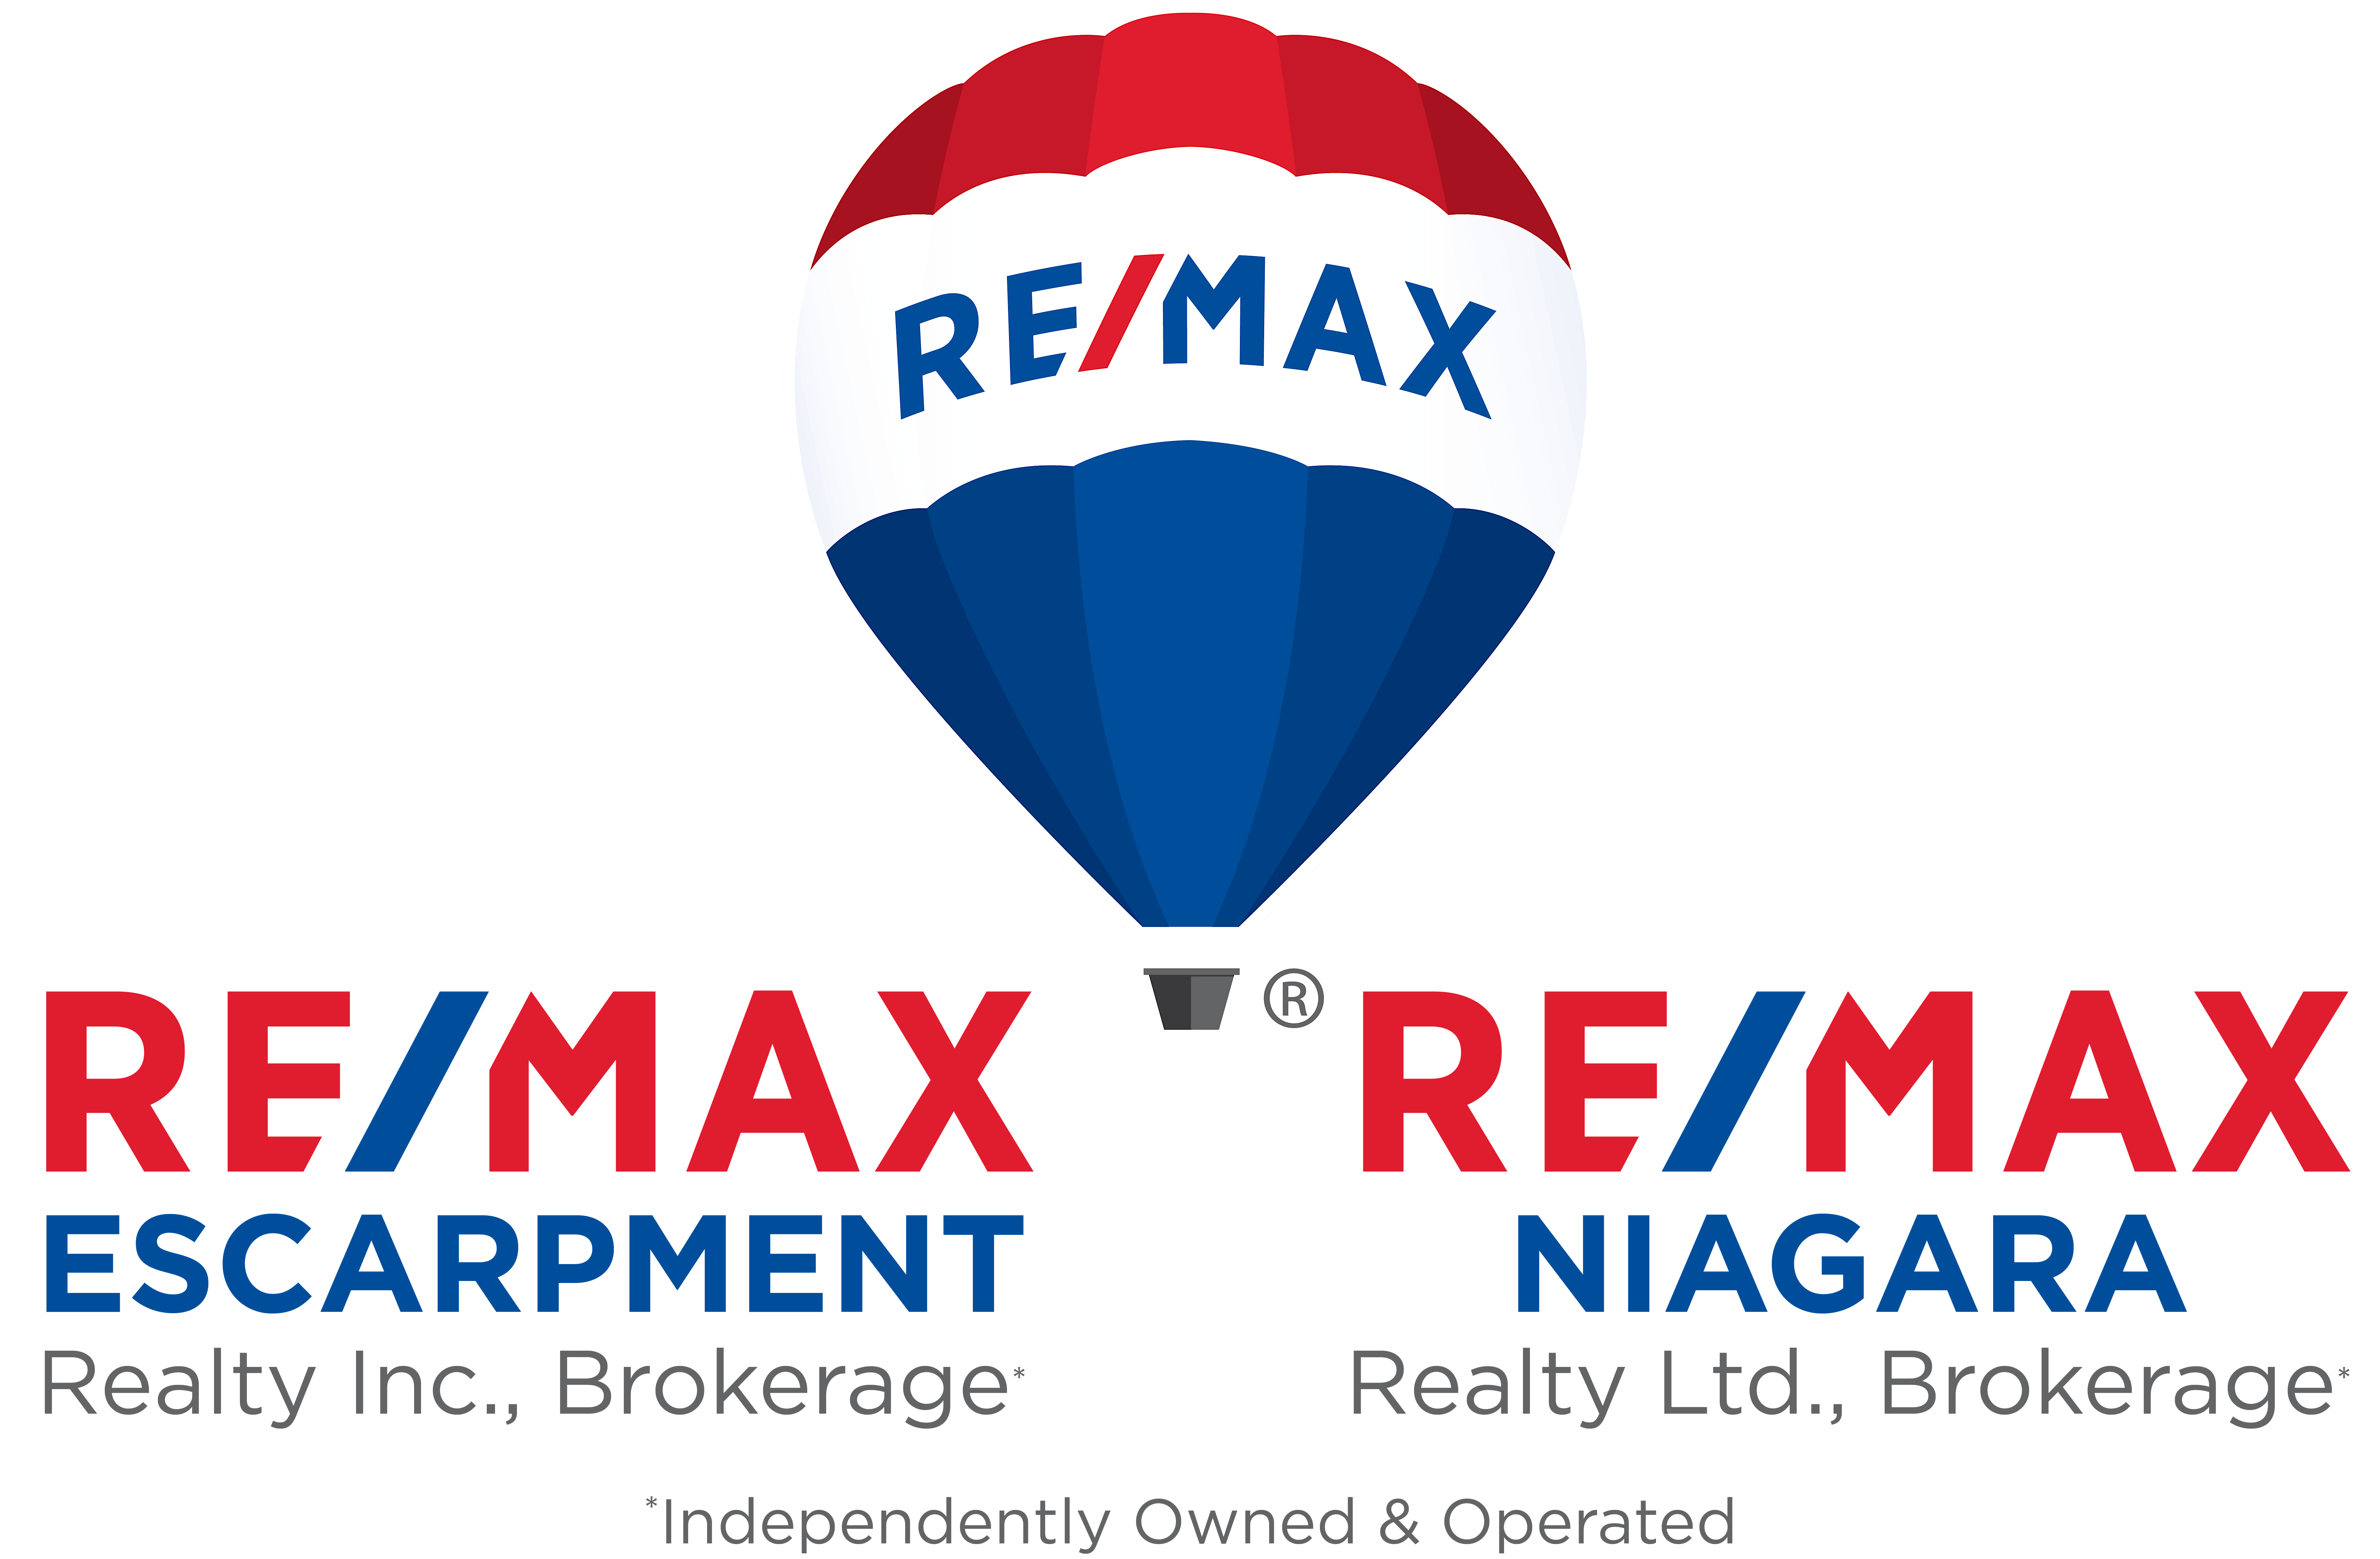 RE\/MAX Escarpment & RE\/MAX Niagara